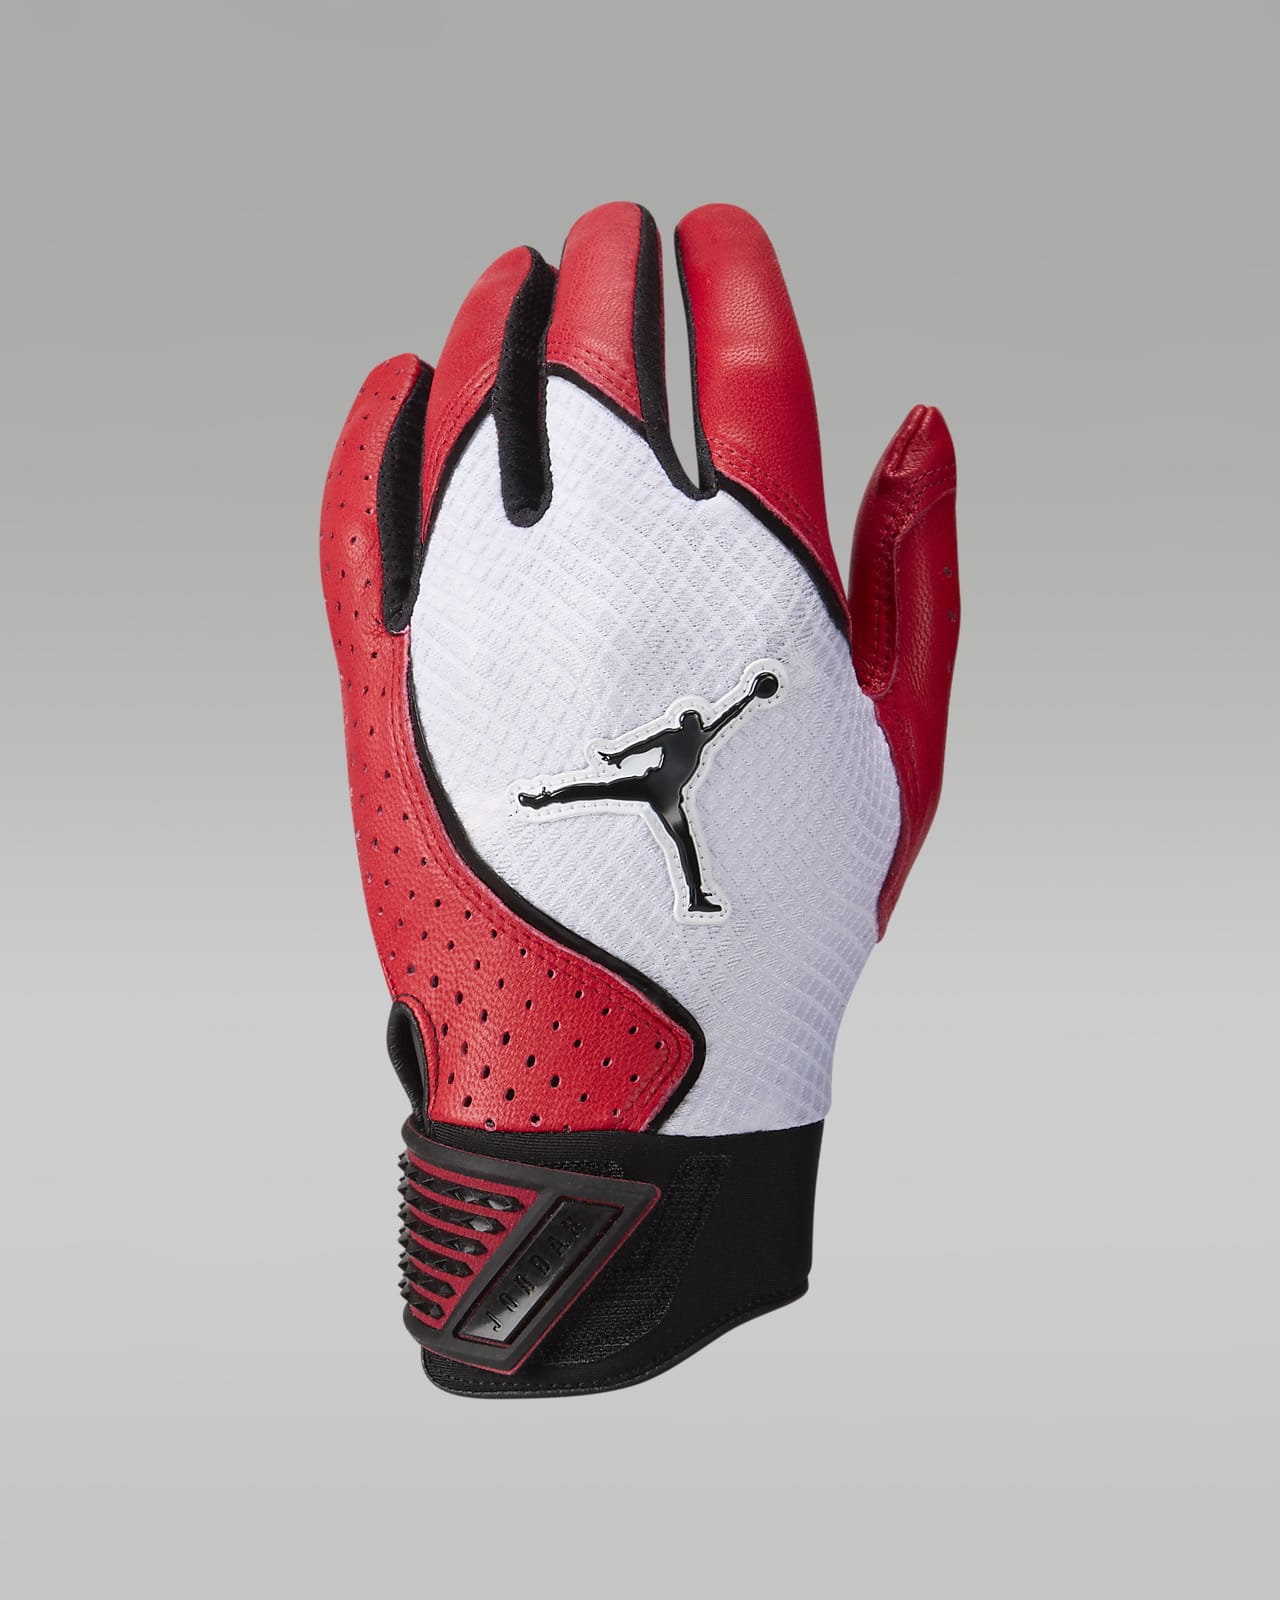 Jordan Fly Select Baseball Gloves